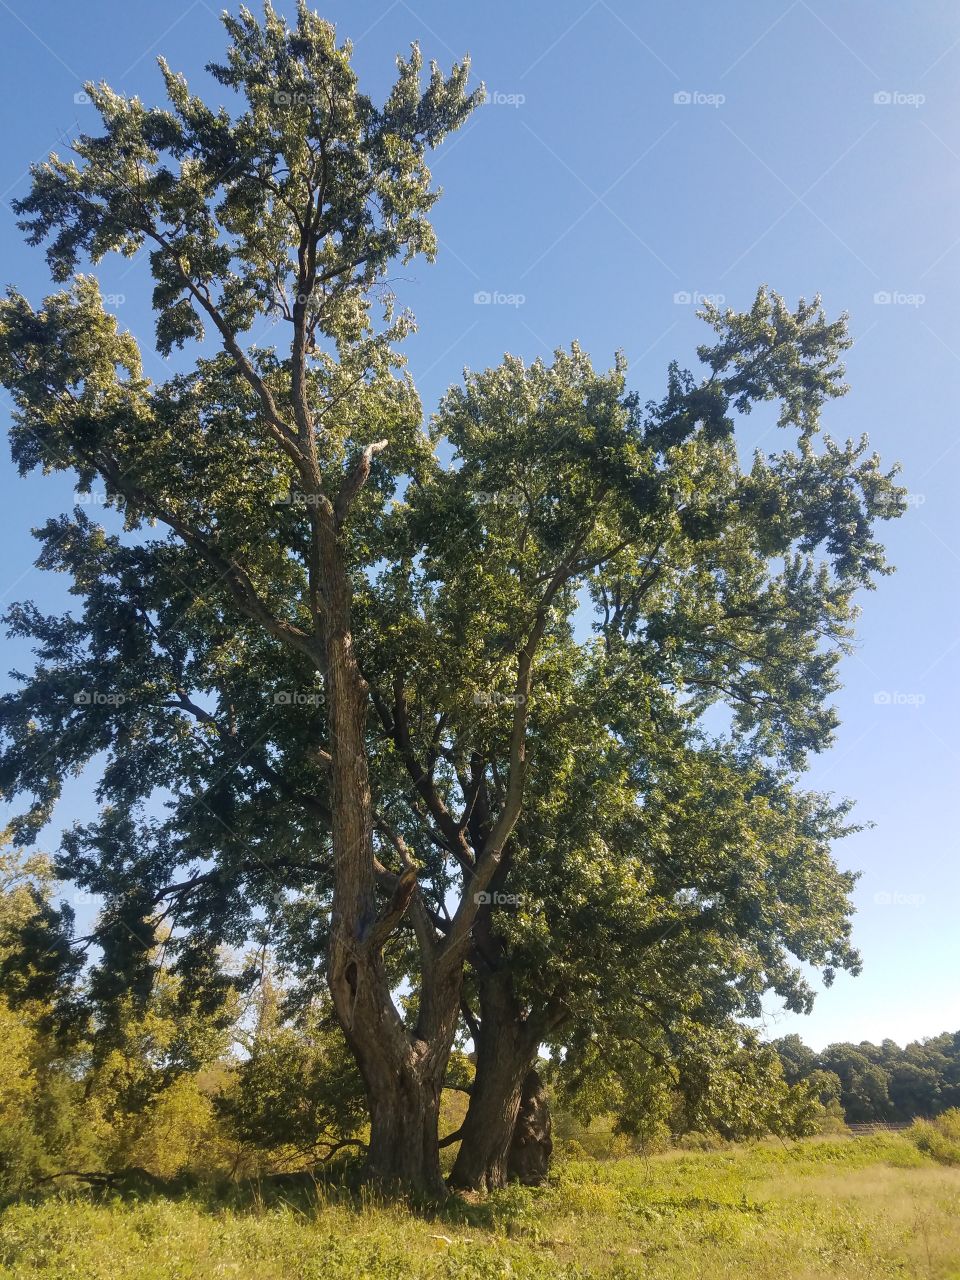 tree so tall